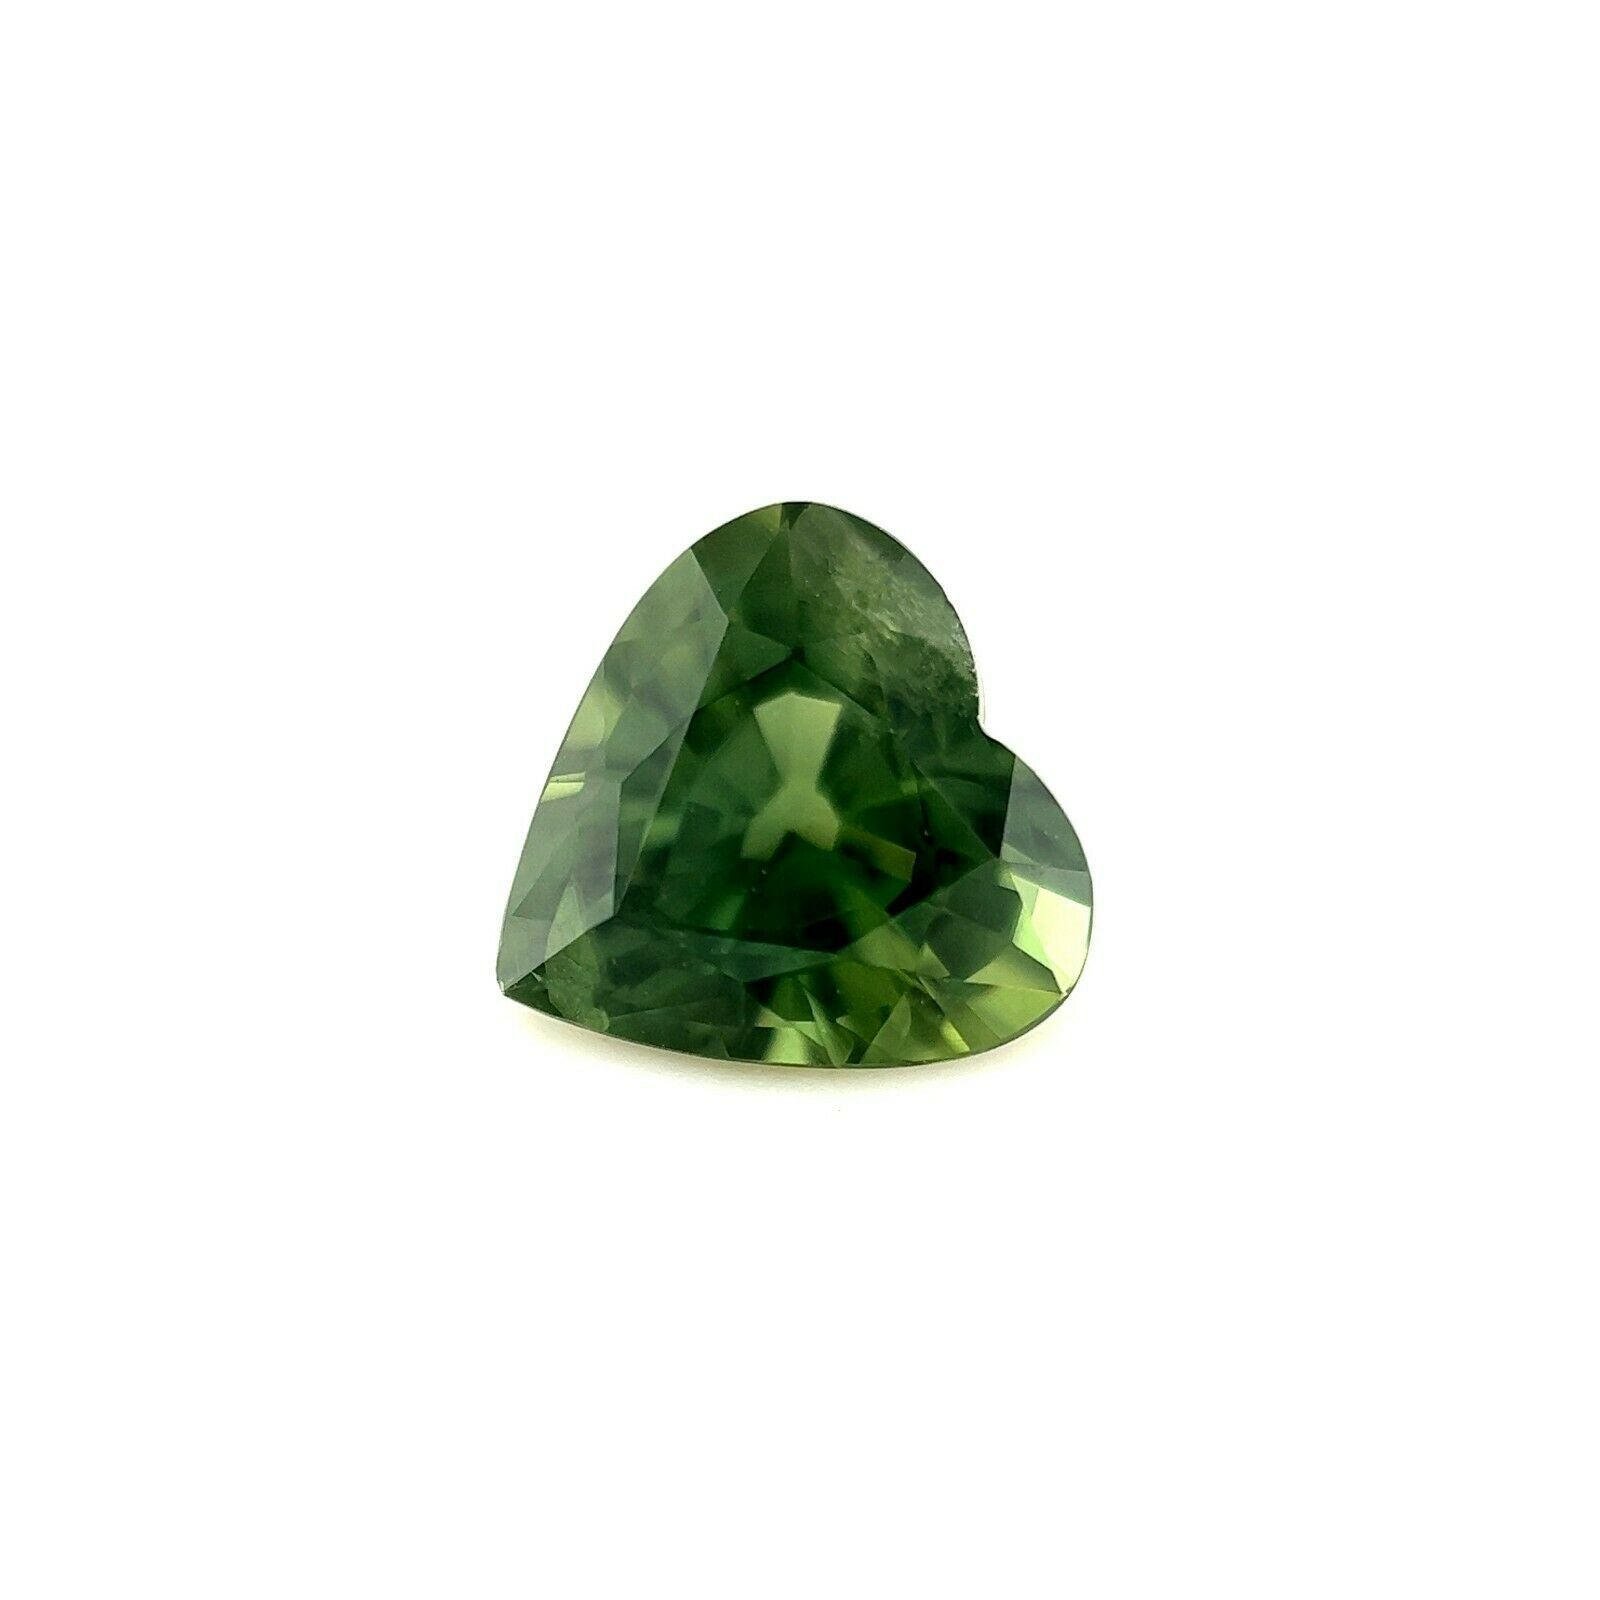 Fine pierre précieuse non sertie rare saphir vert foncé de couleur vert profond taille cœur 1,26 carat, 6,7 x 6,6 mm